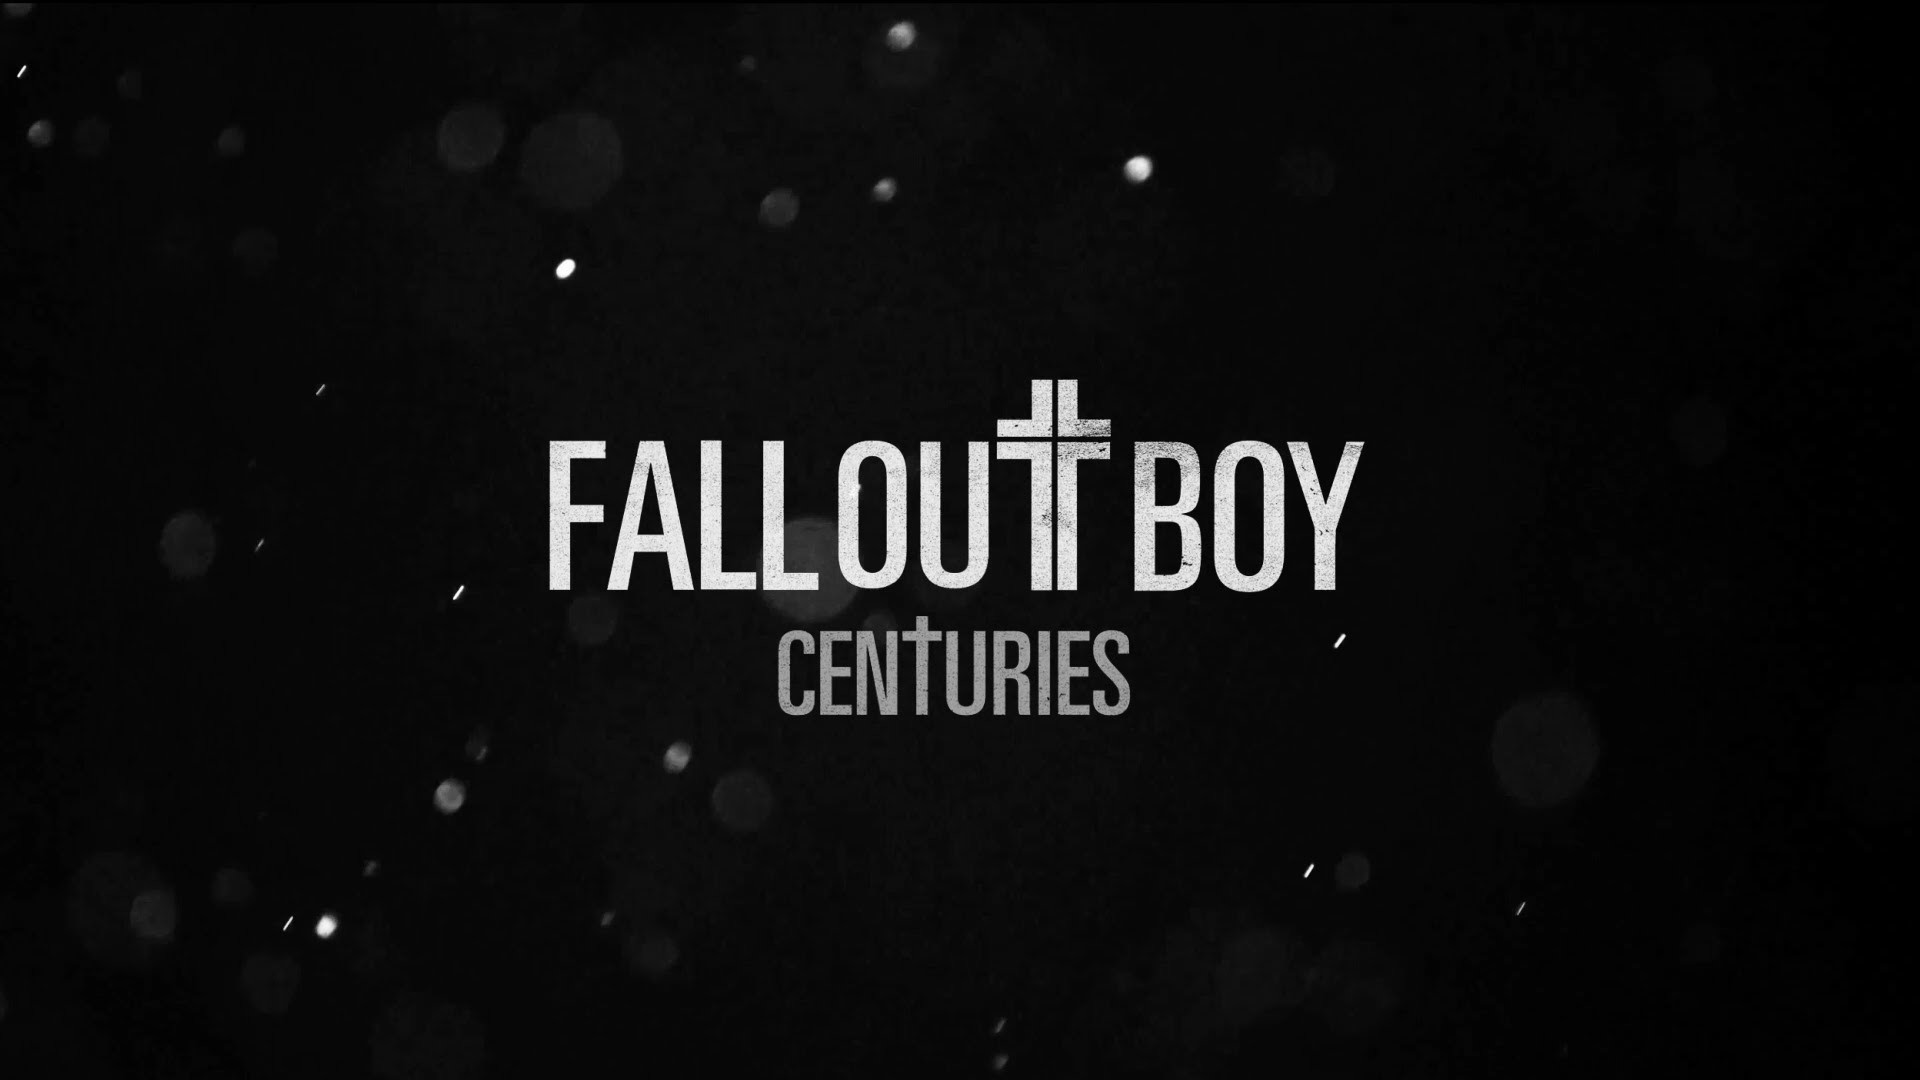 Centuries fall out. Fall out boy Centuries. Fallout boy Centuries. Группа Fall out boy Centuries. Fall out boy обложка.